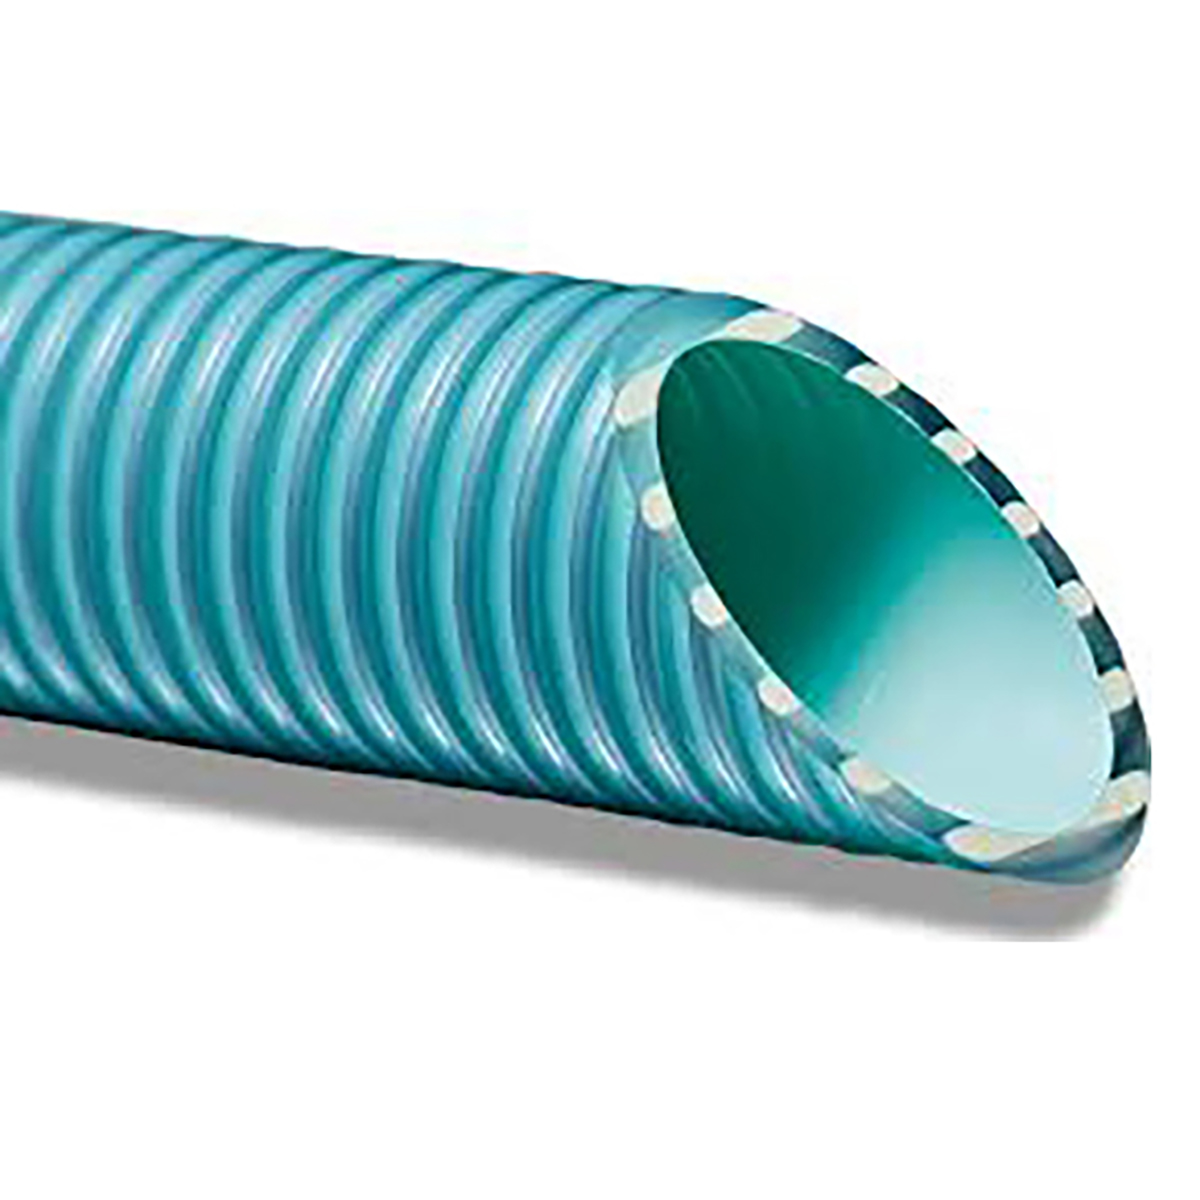 Peraqua PVC-Flex hose d50 reinforced, B-active,50-42, l=25m, ISO 1307:2008 Peraqua PVC-Flex hose d50 reinforced, B-active,50-42, l=25m, ISO 1307:2008